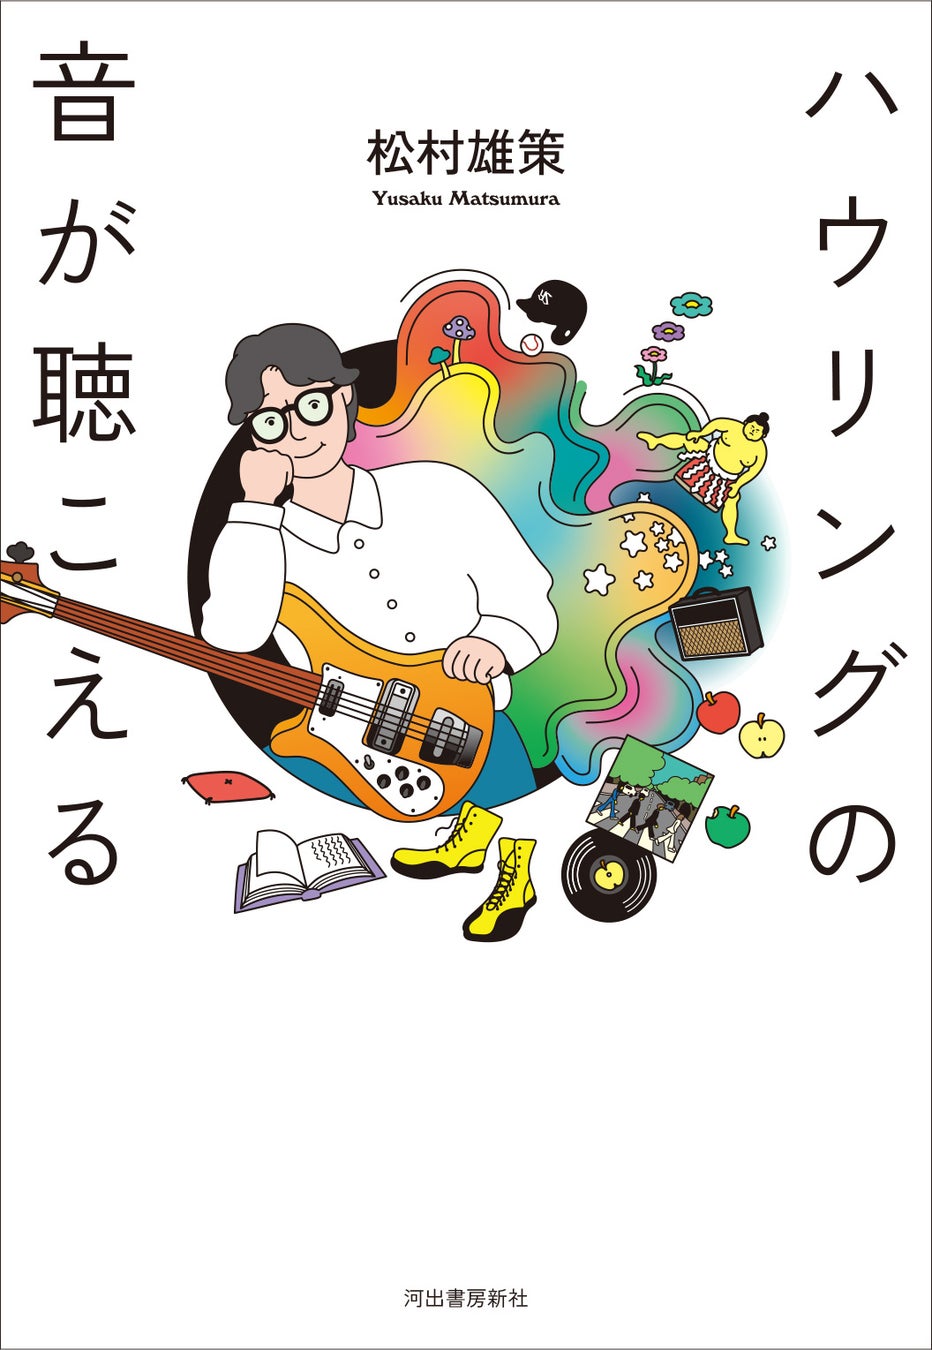 「生き残るために。ロックを続けるために。」ロッキング・オン創刊メンバー、松村雄策によるエッセイ集『ハウリングの音が聴こえる』が発売！